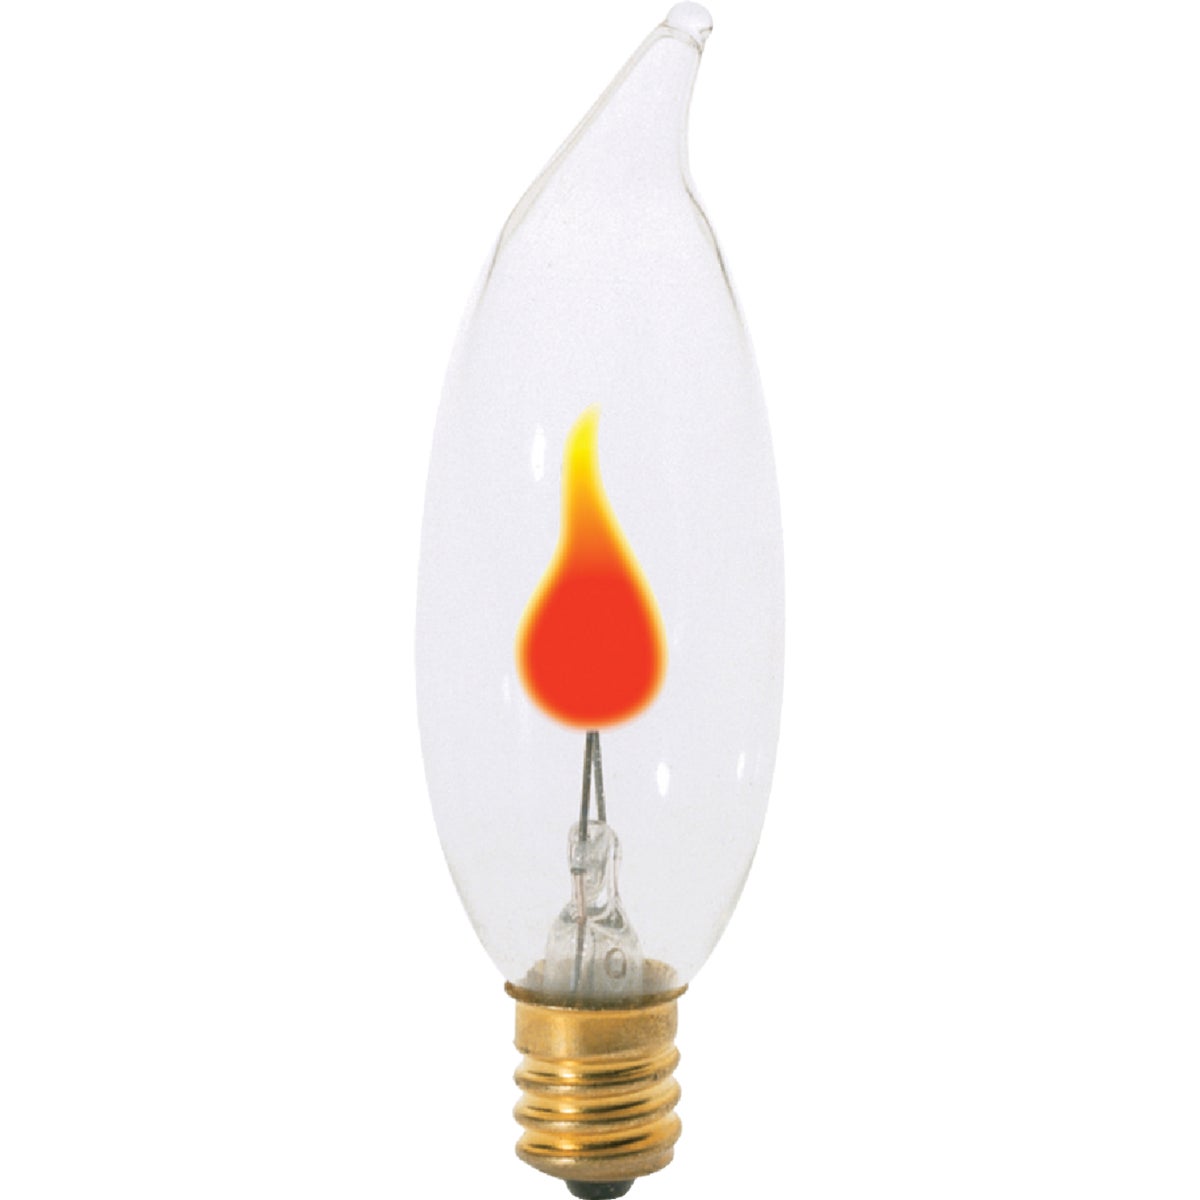 Item 526666, CA8, candelabra base, flicker flame, decorative incandescent light bulb.